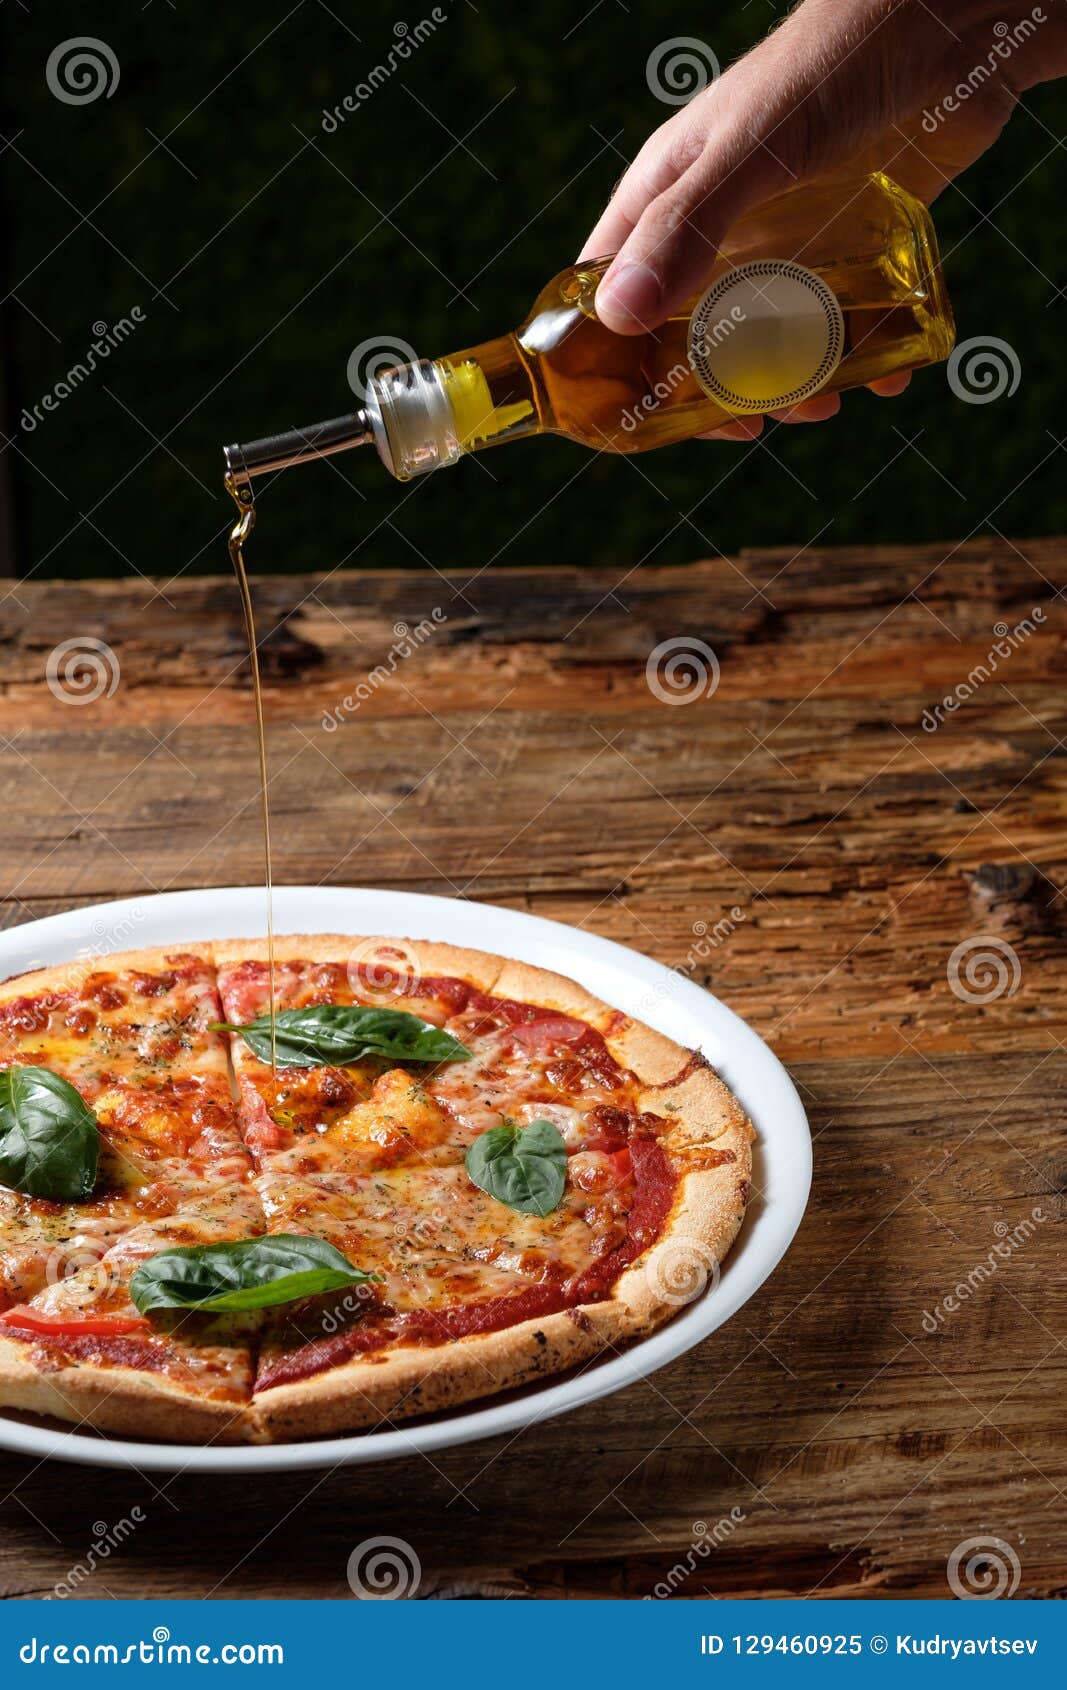 масло острое для пиццы как в пиццерии рецепт (120) фото